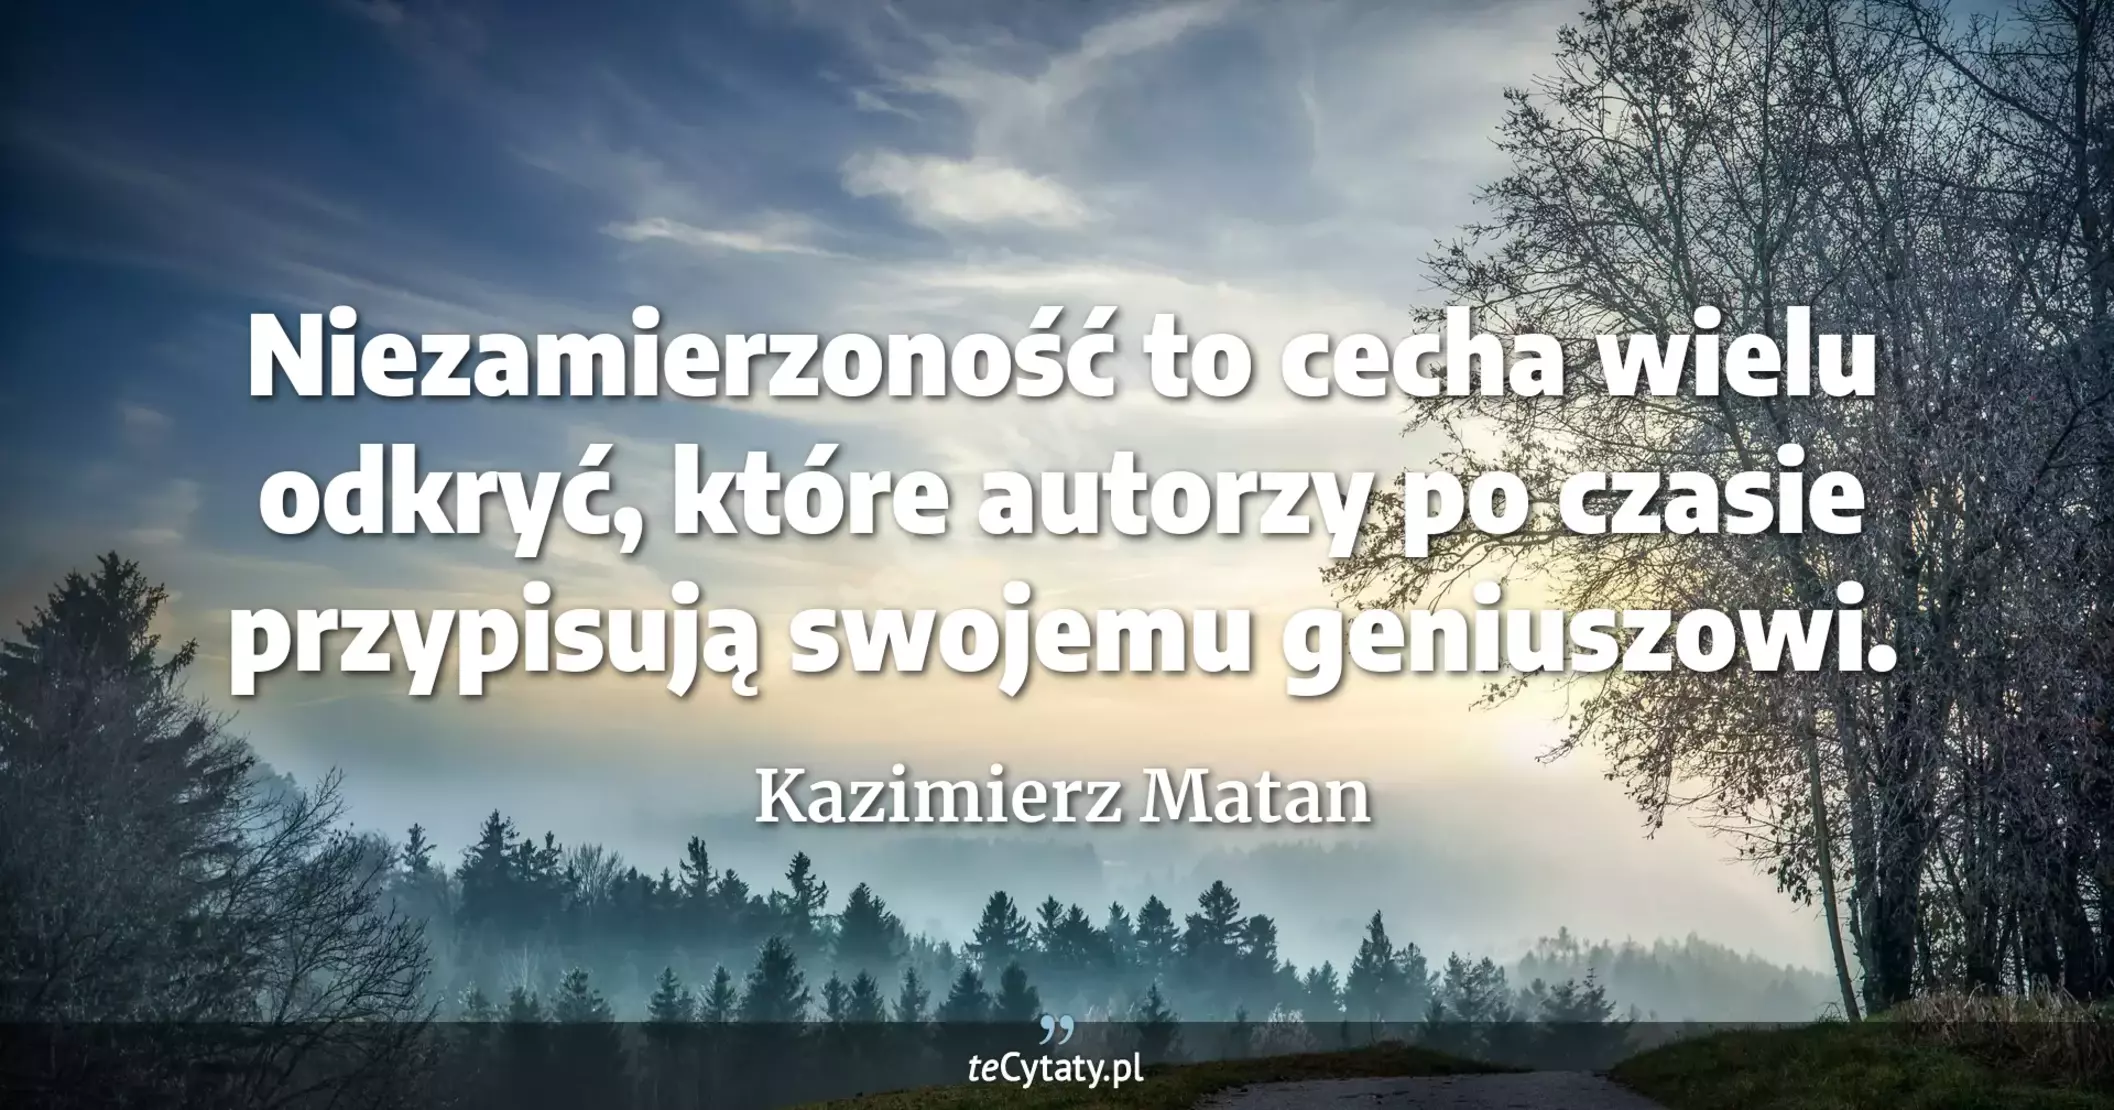 Niezamierzoność to cecha wielu odkryć, które autorzy po czasie przypisują swojemu geniuszowi. - Kazimierz Matan